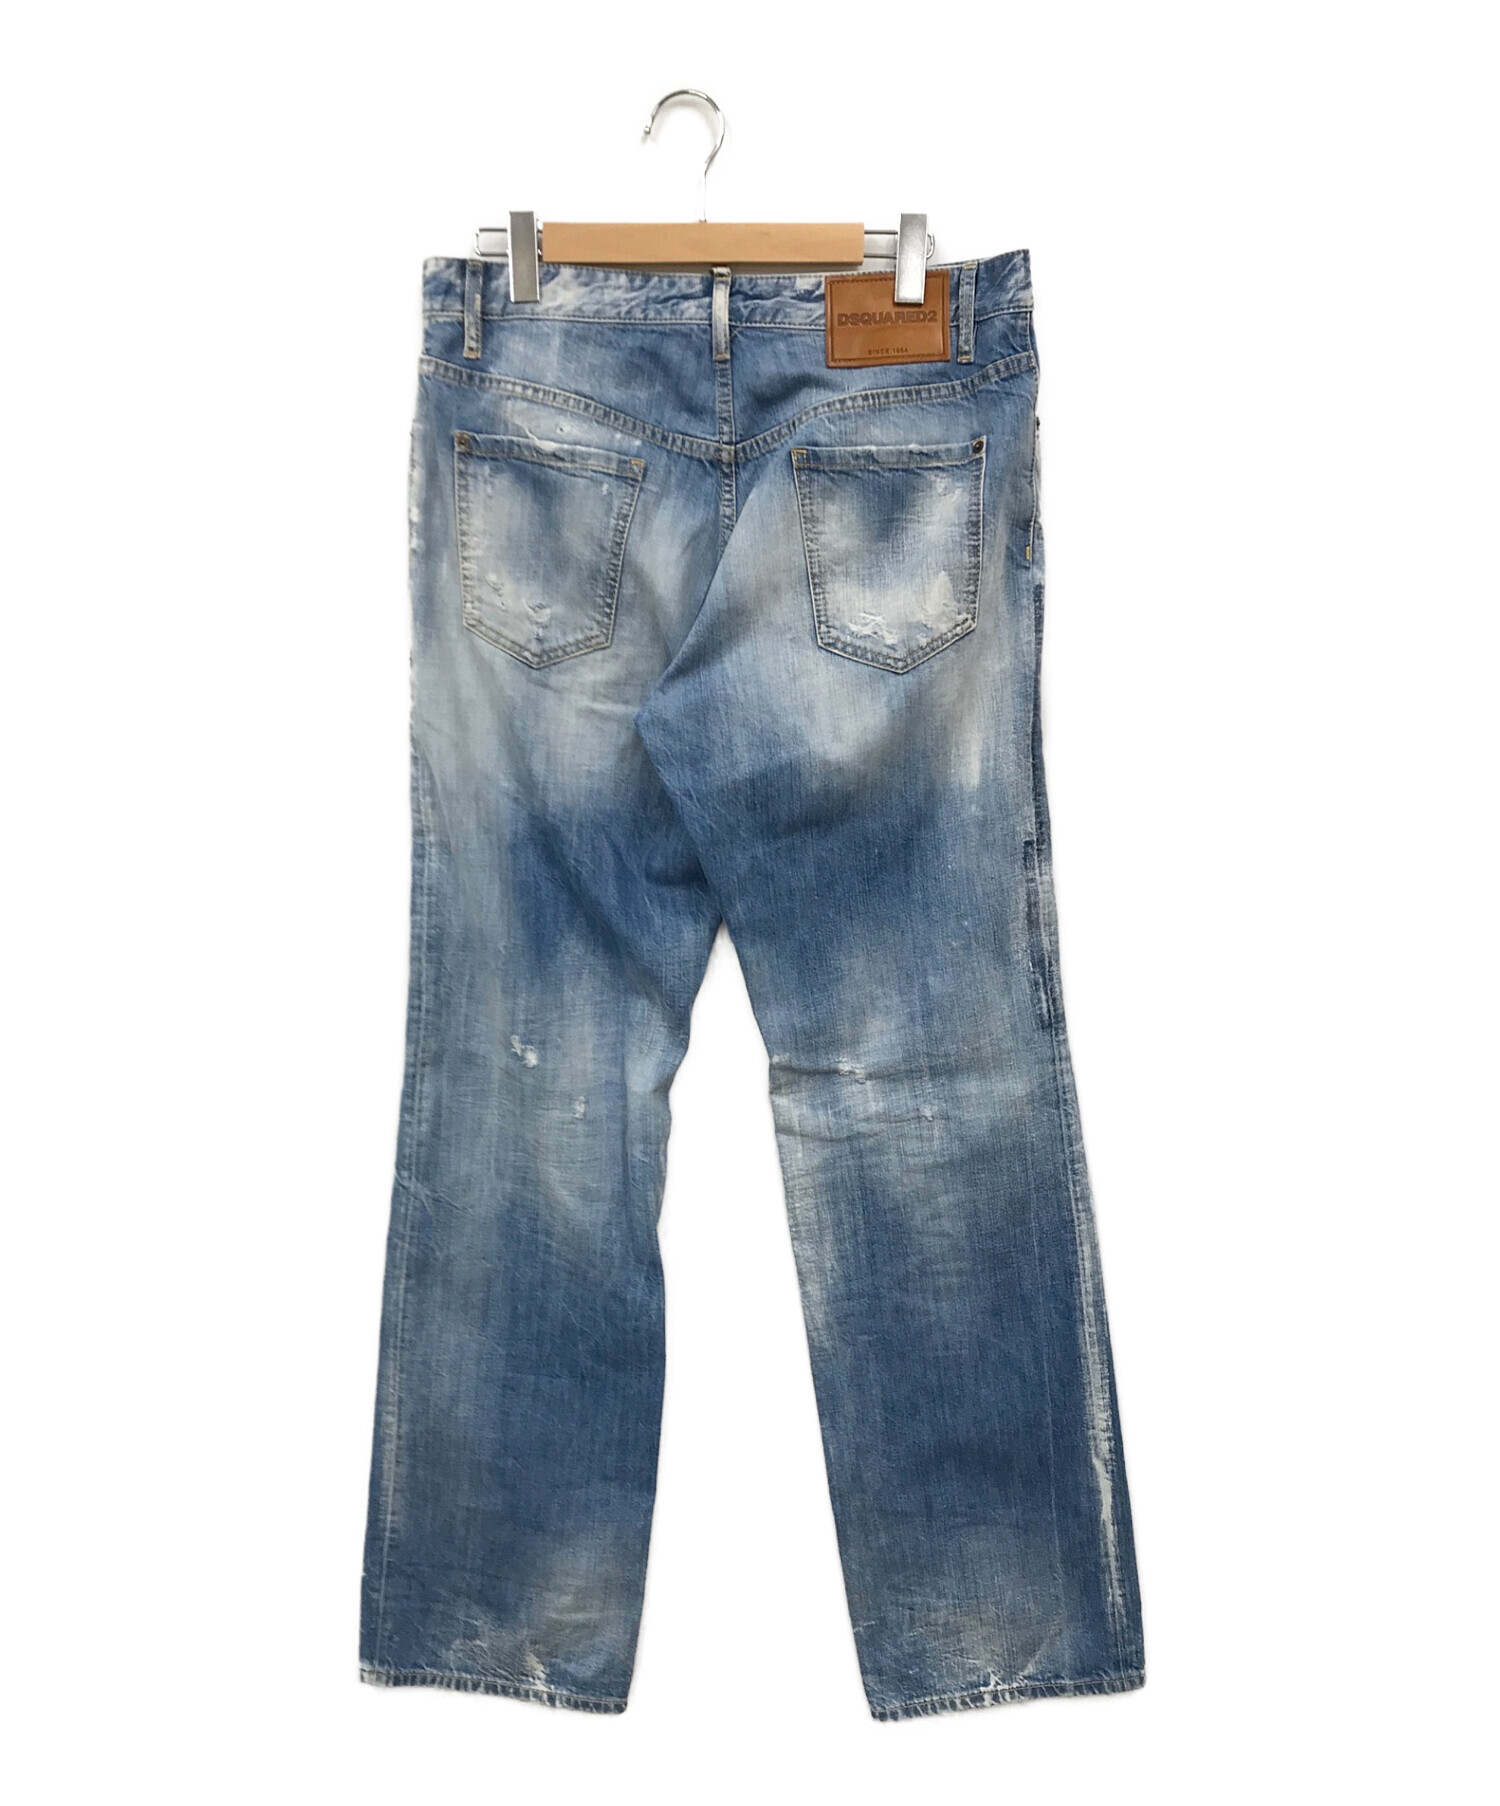 デニム/ジーンズDsquared2 denim jeans